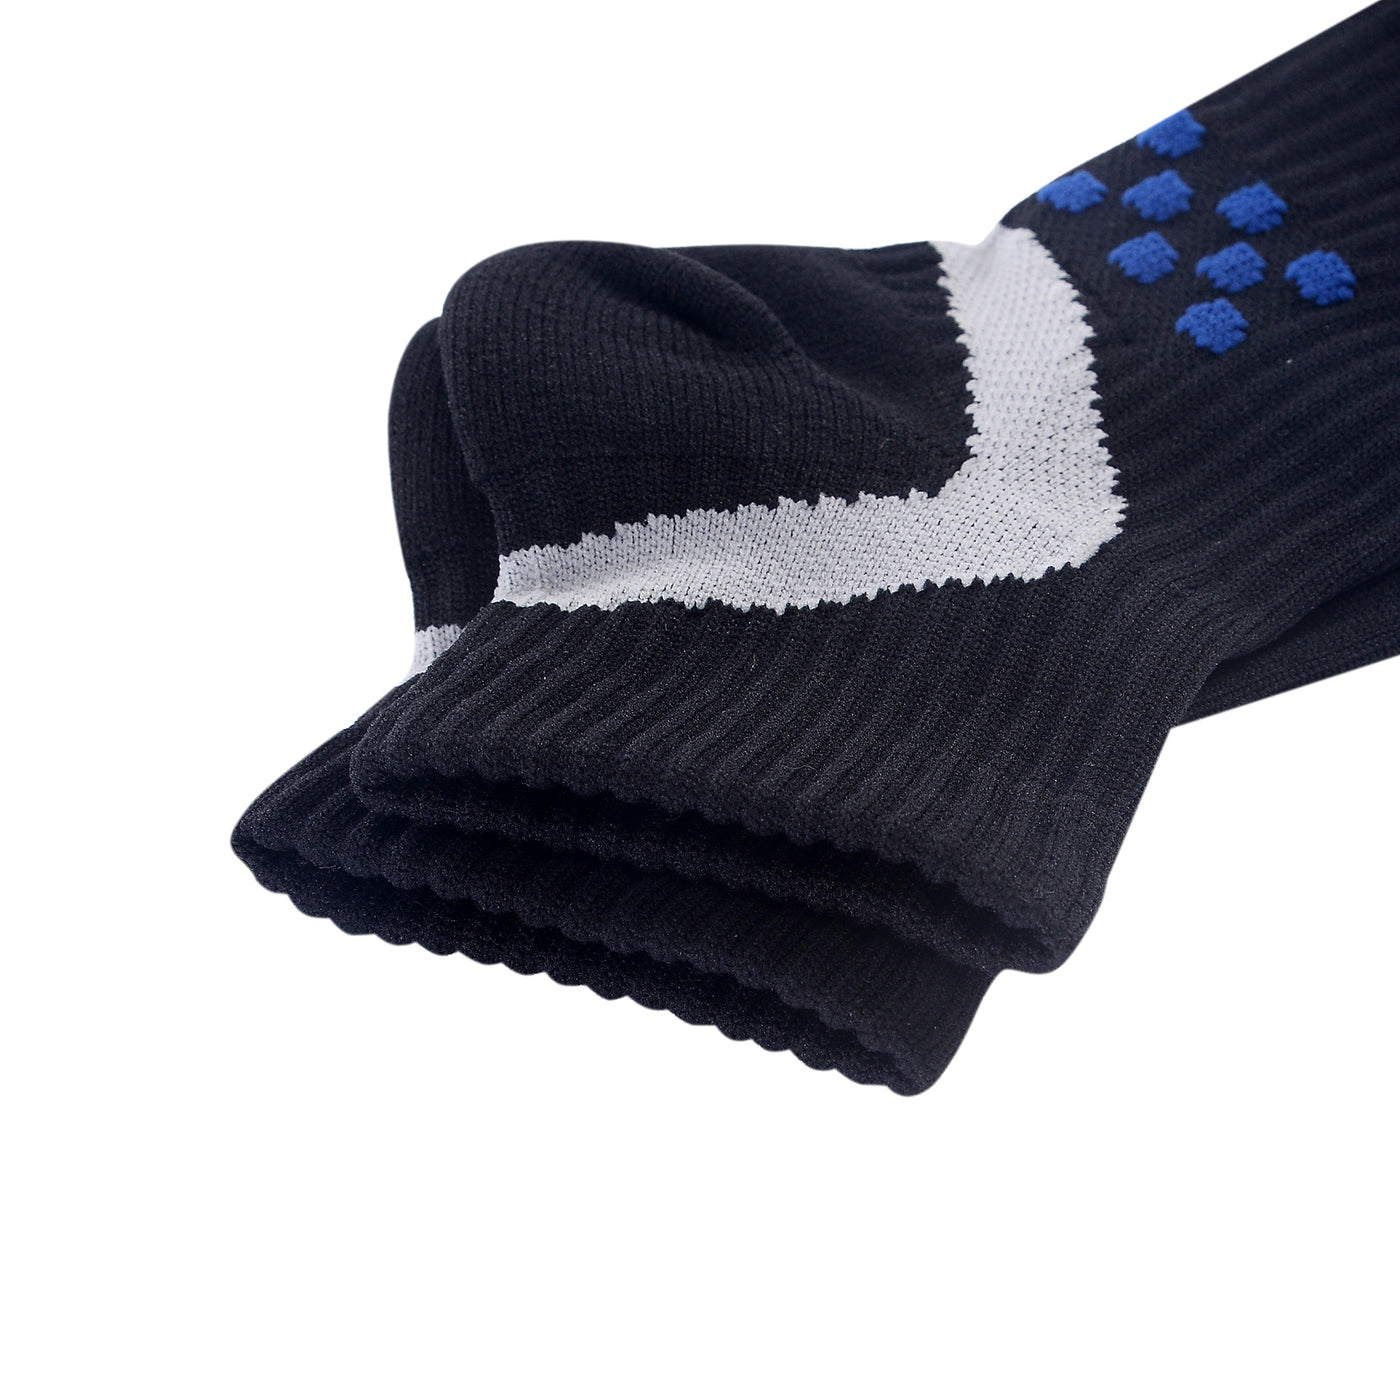 Calcetines profesionales para correr COOLMAX - Masaje de compresión - Negro - Talla UK 7 - 11 